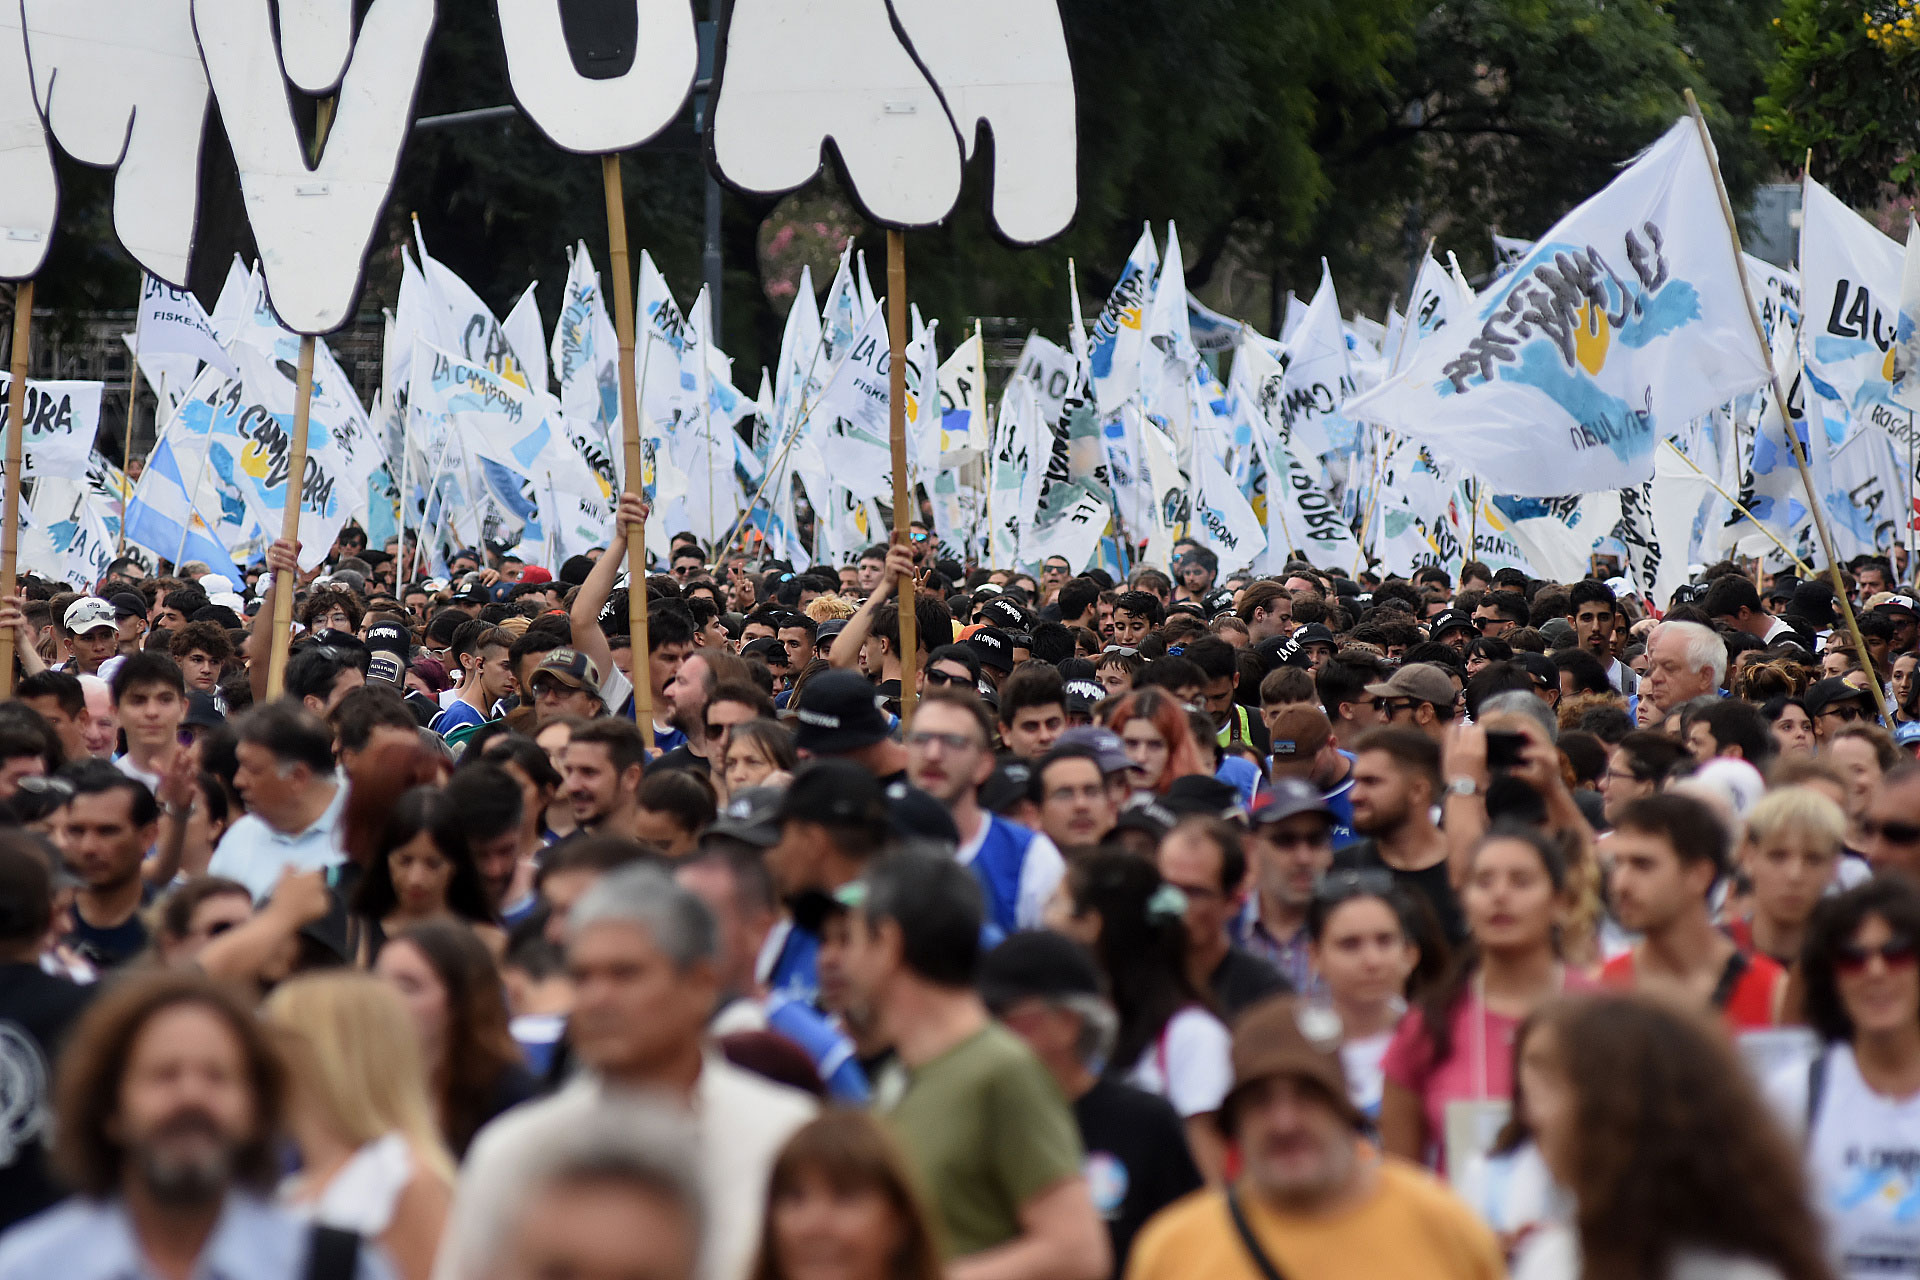 El kirchnerismo reunió miles de personas en la marcha del 24 de marzo y redobla la presión sobre Alberto Fernández  